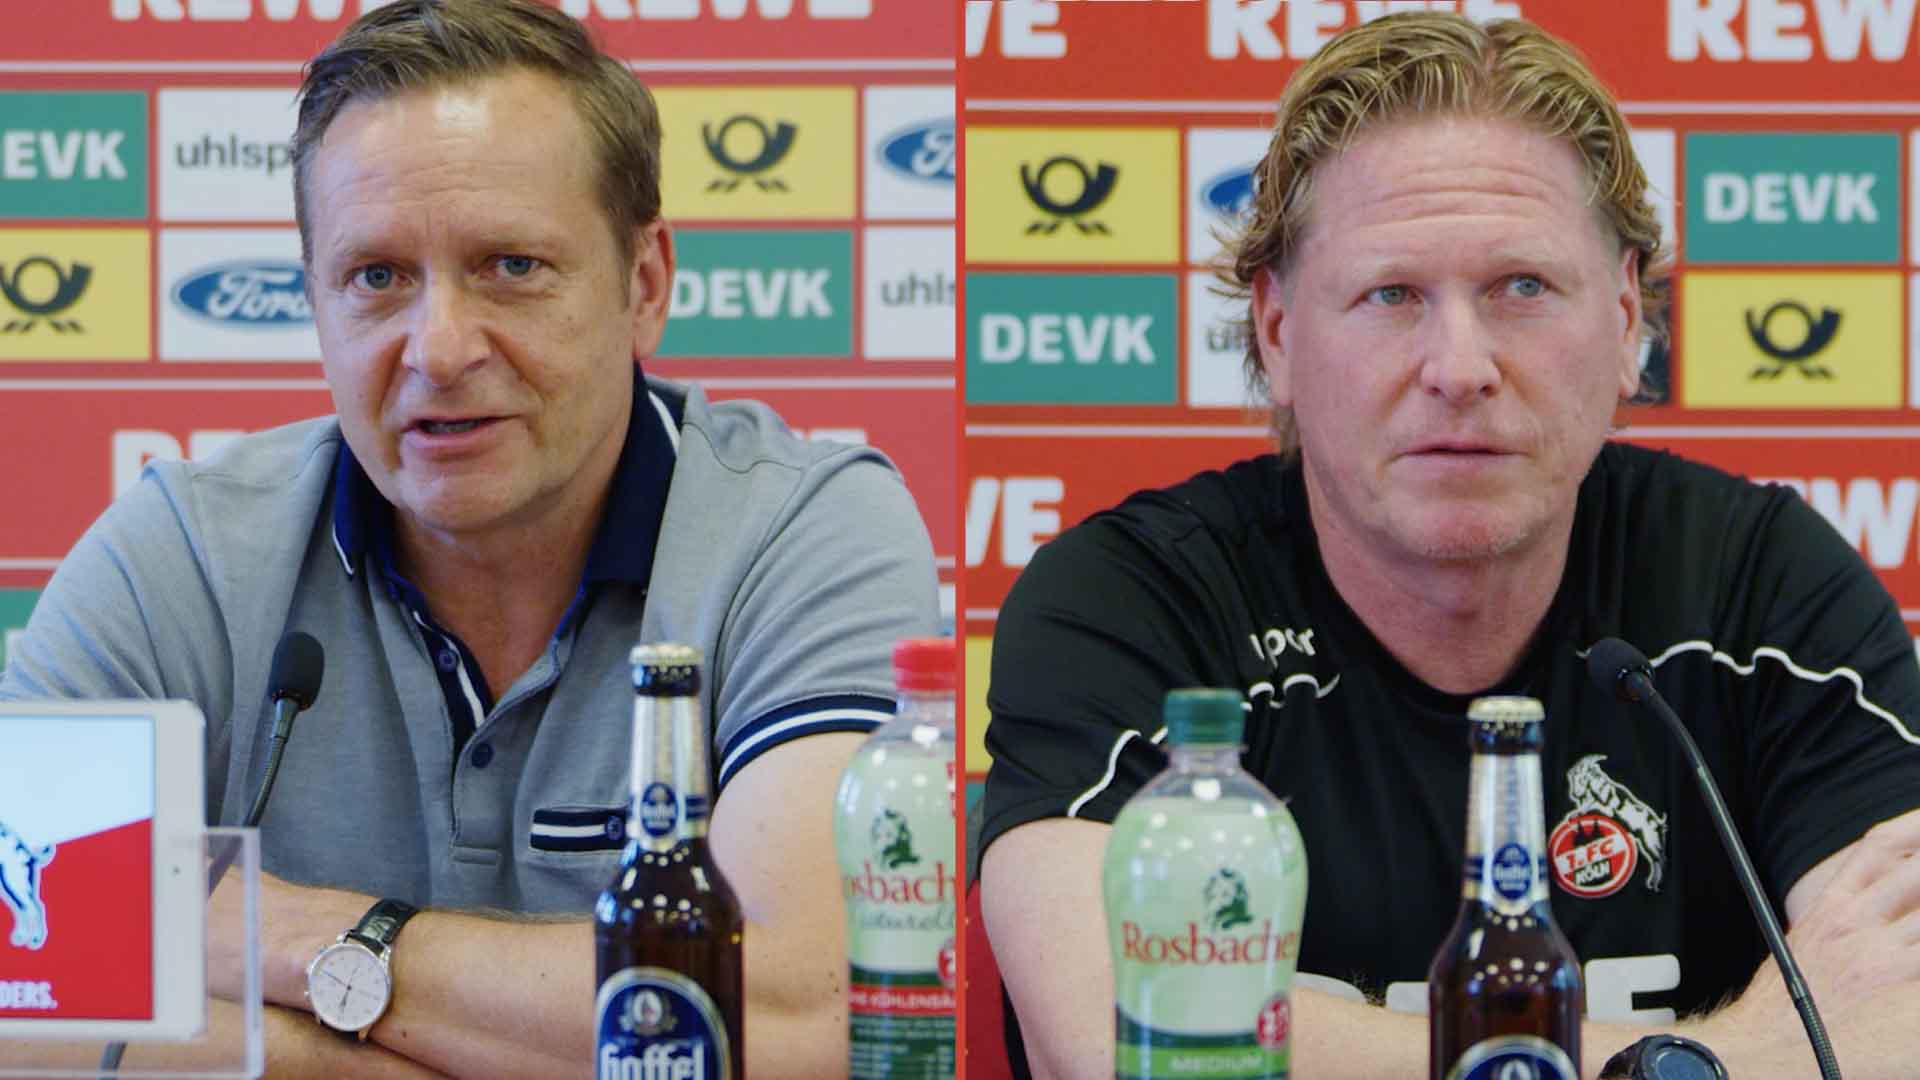 PK vor Leipzig: “Wir waren nie weg aus dem Abstiegskampf”